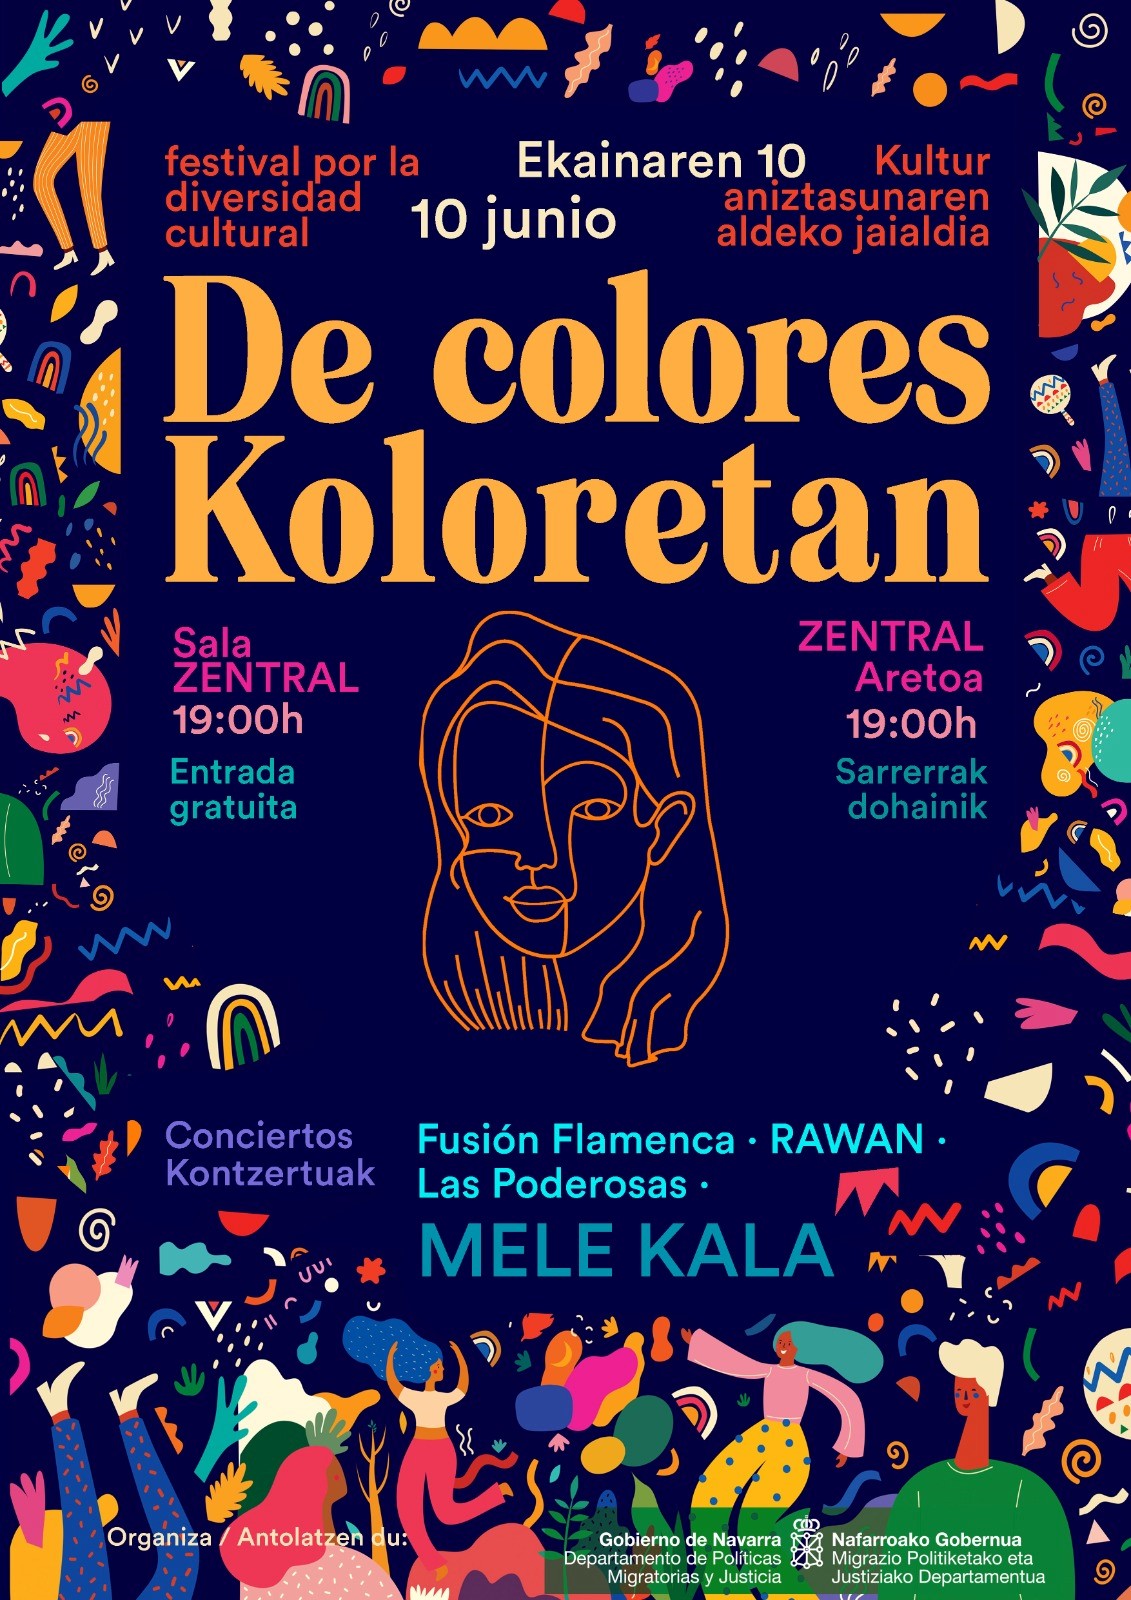 Festival por la Diversidad Cultural “De Colores/Koloretan”